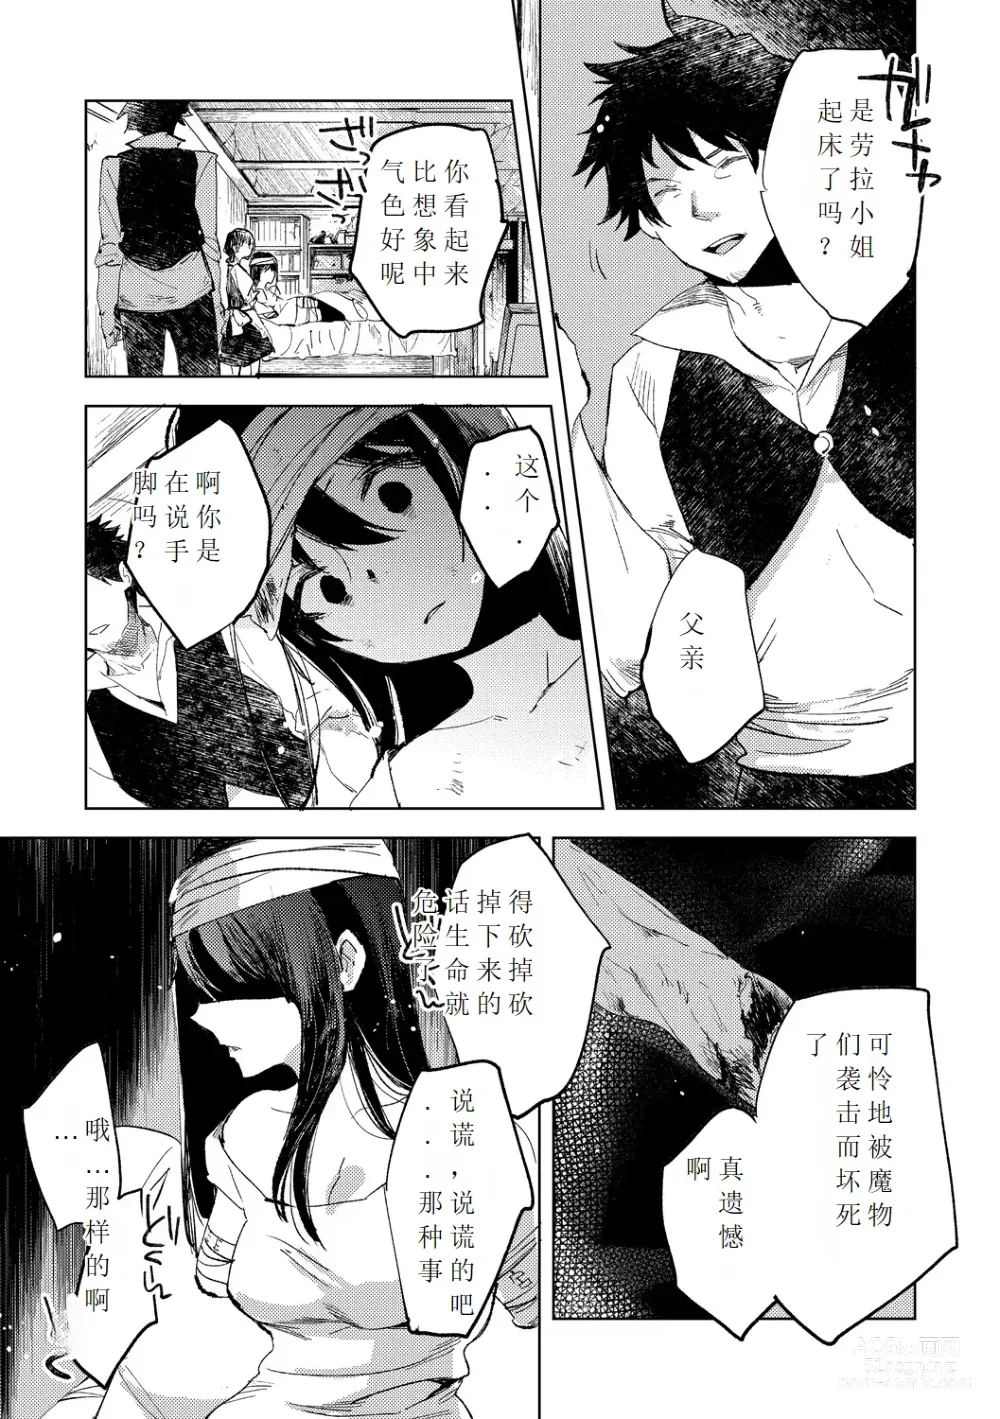 Page 9 of manga Tensei shitara Daruma Joshi ni Sareta Usotsuki Bitch.